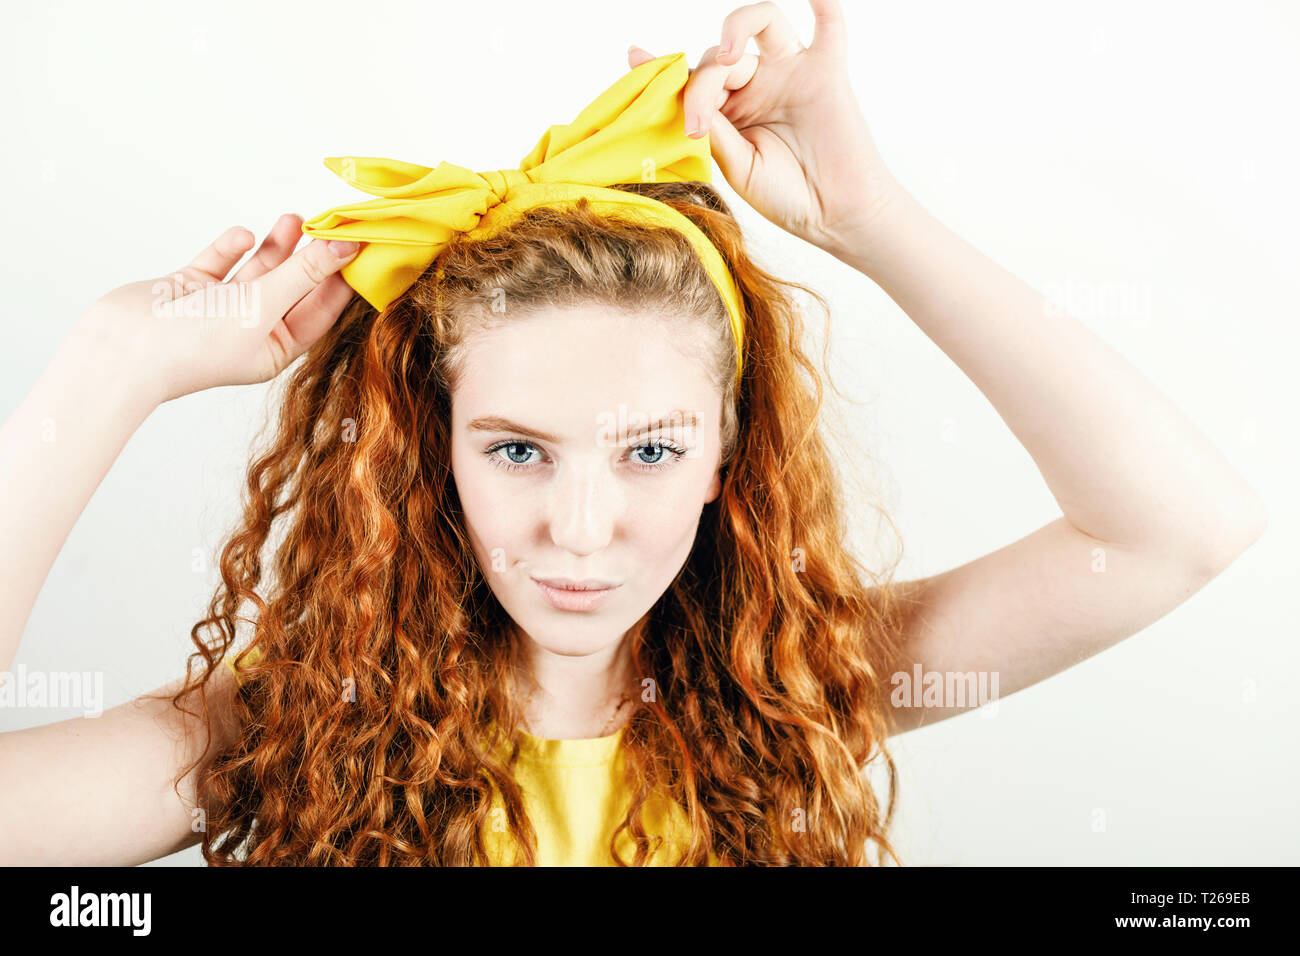 Portrait de curly redhead girl wearing yellow t-shirt bow jaune se redresse sur sa tête en étant debout sur le fond blanc Banque D'Images